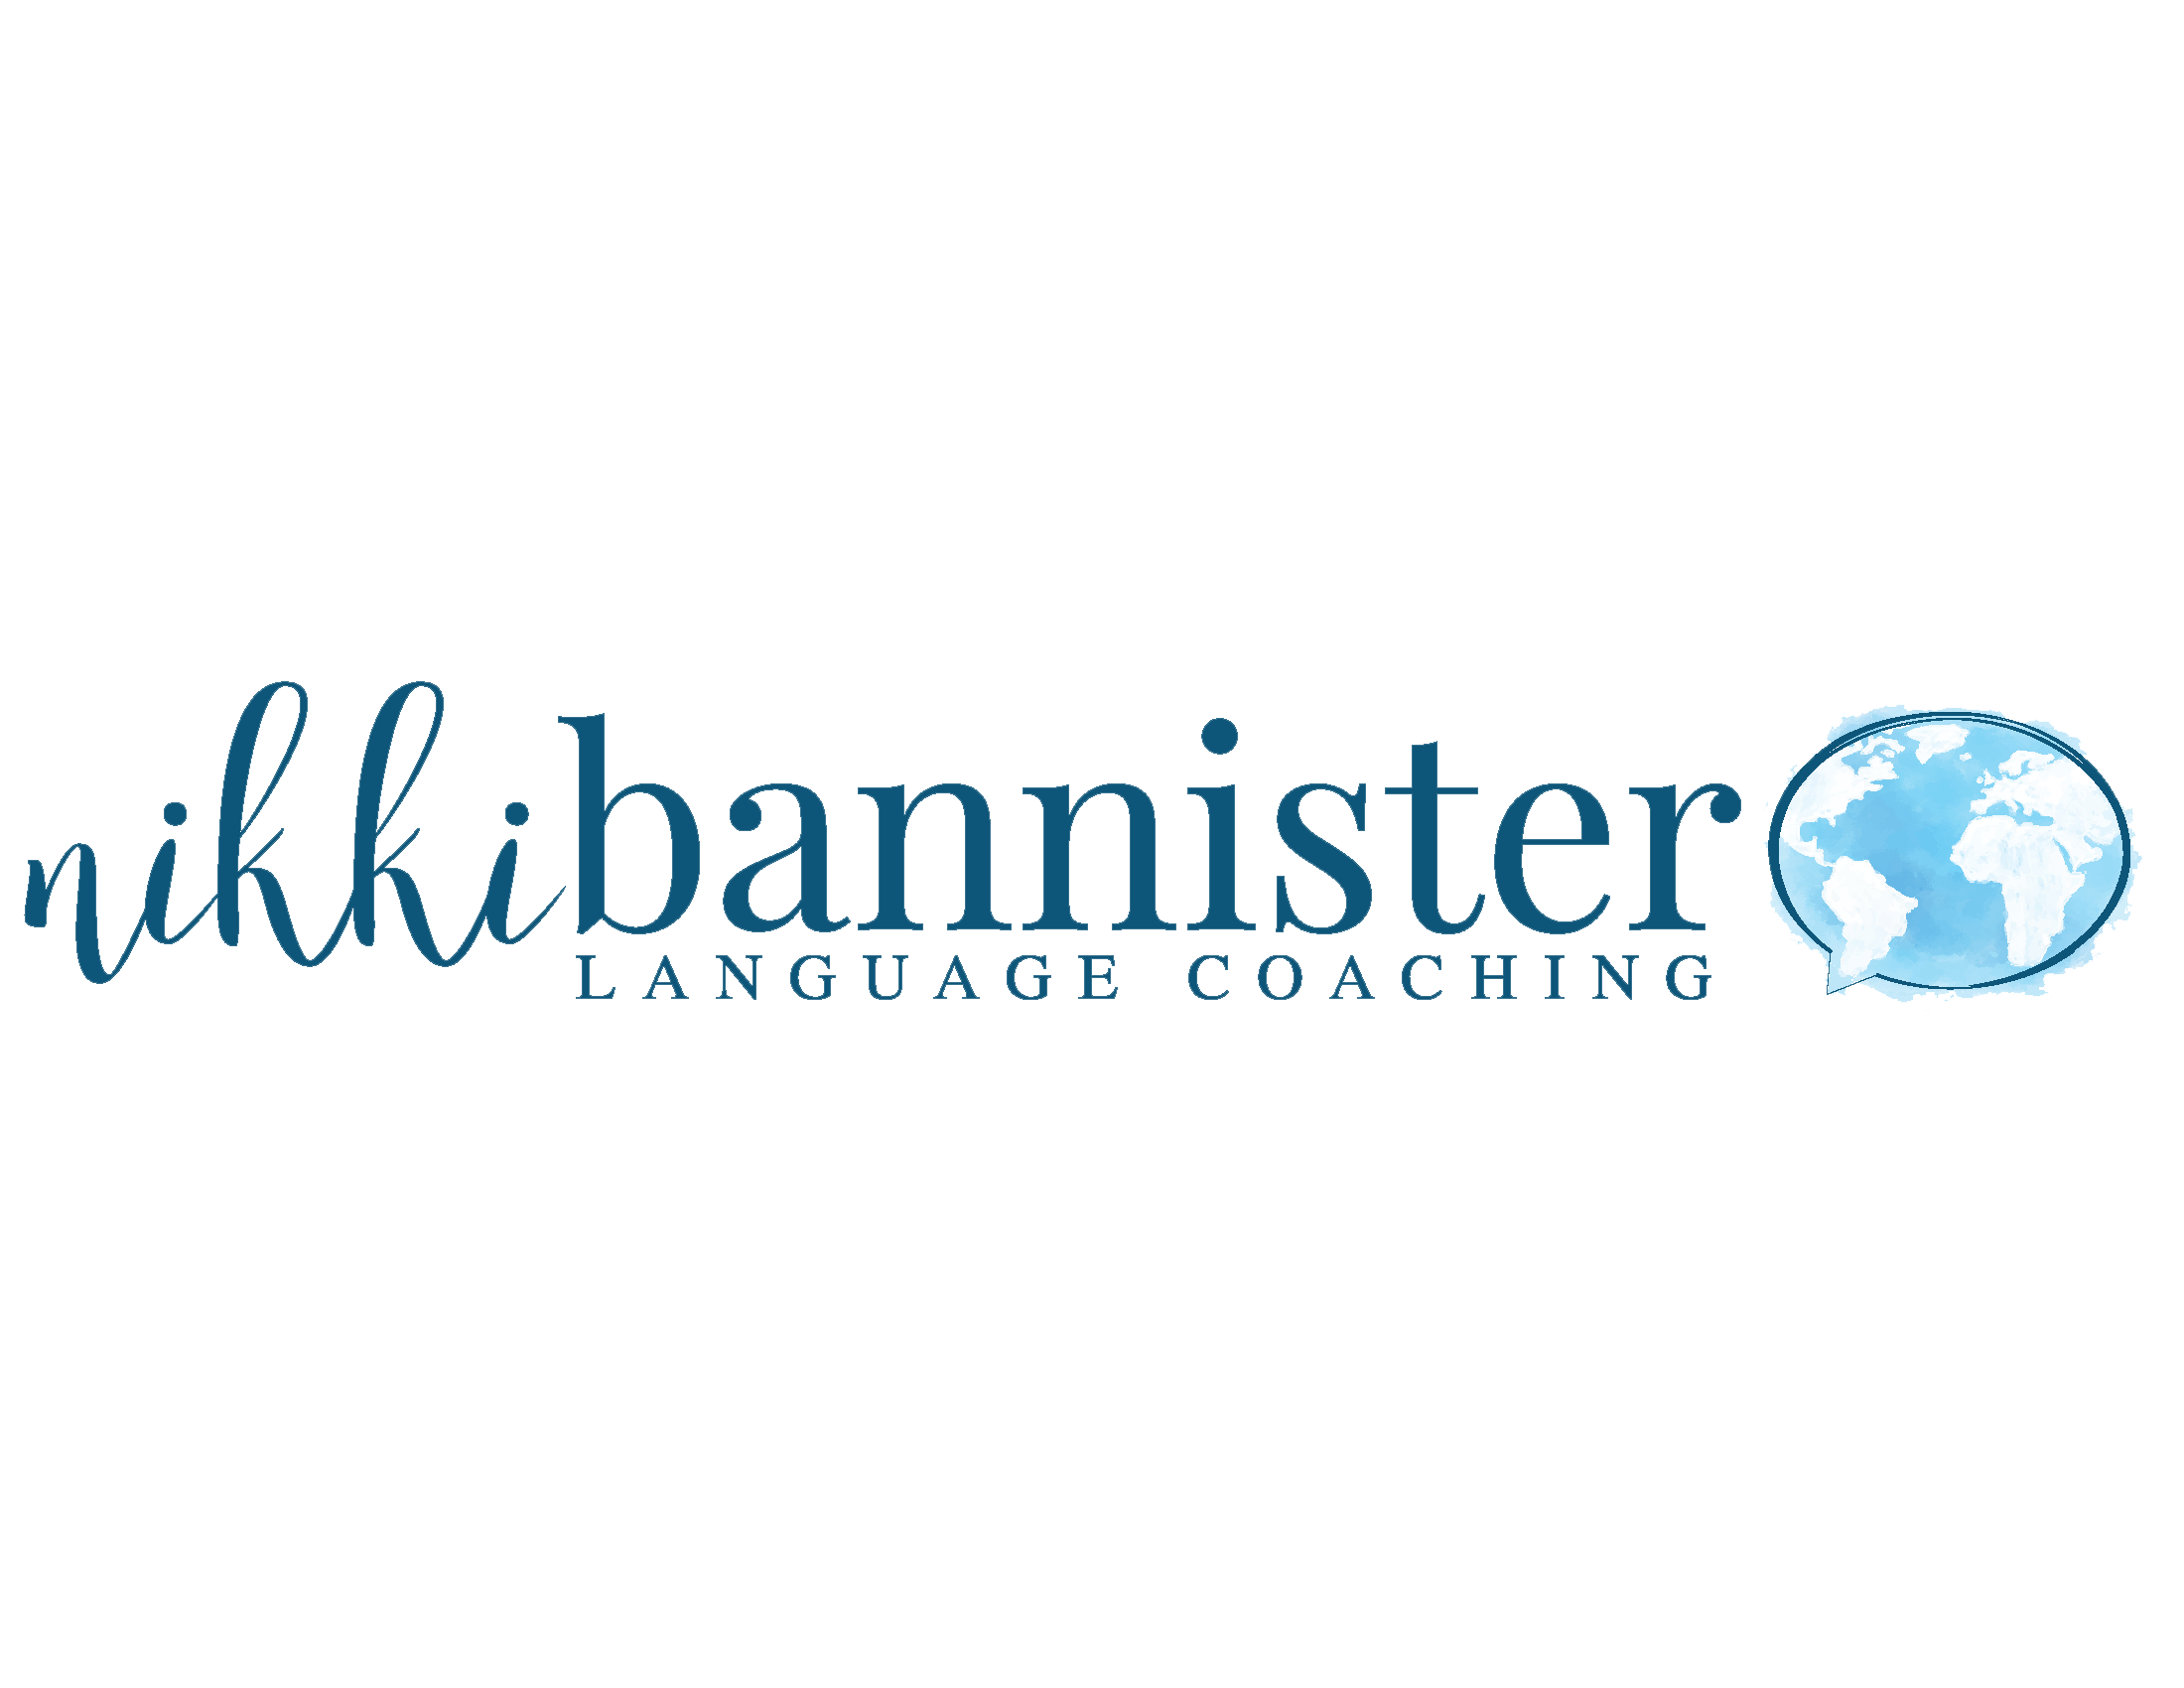 Nikki Bannister Language Coaching